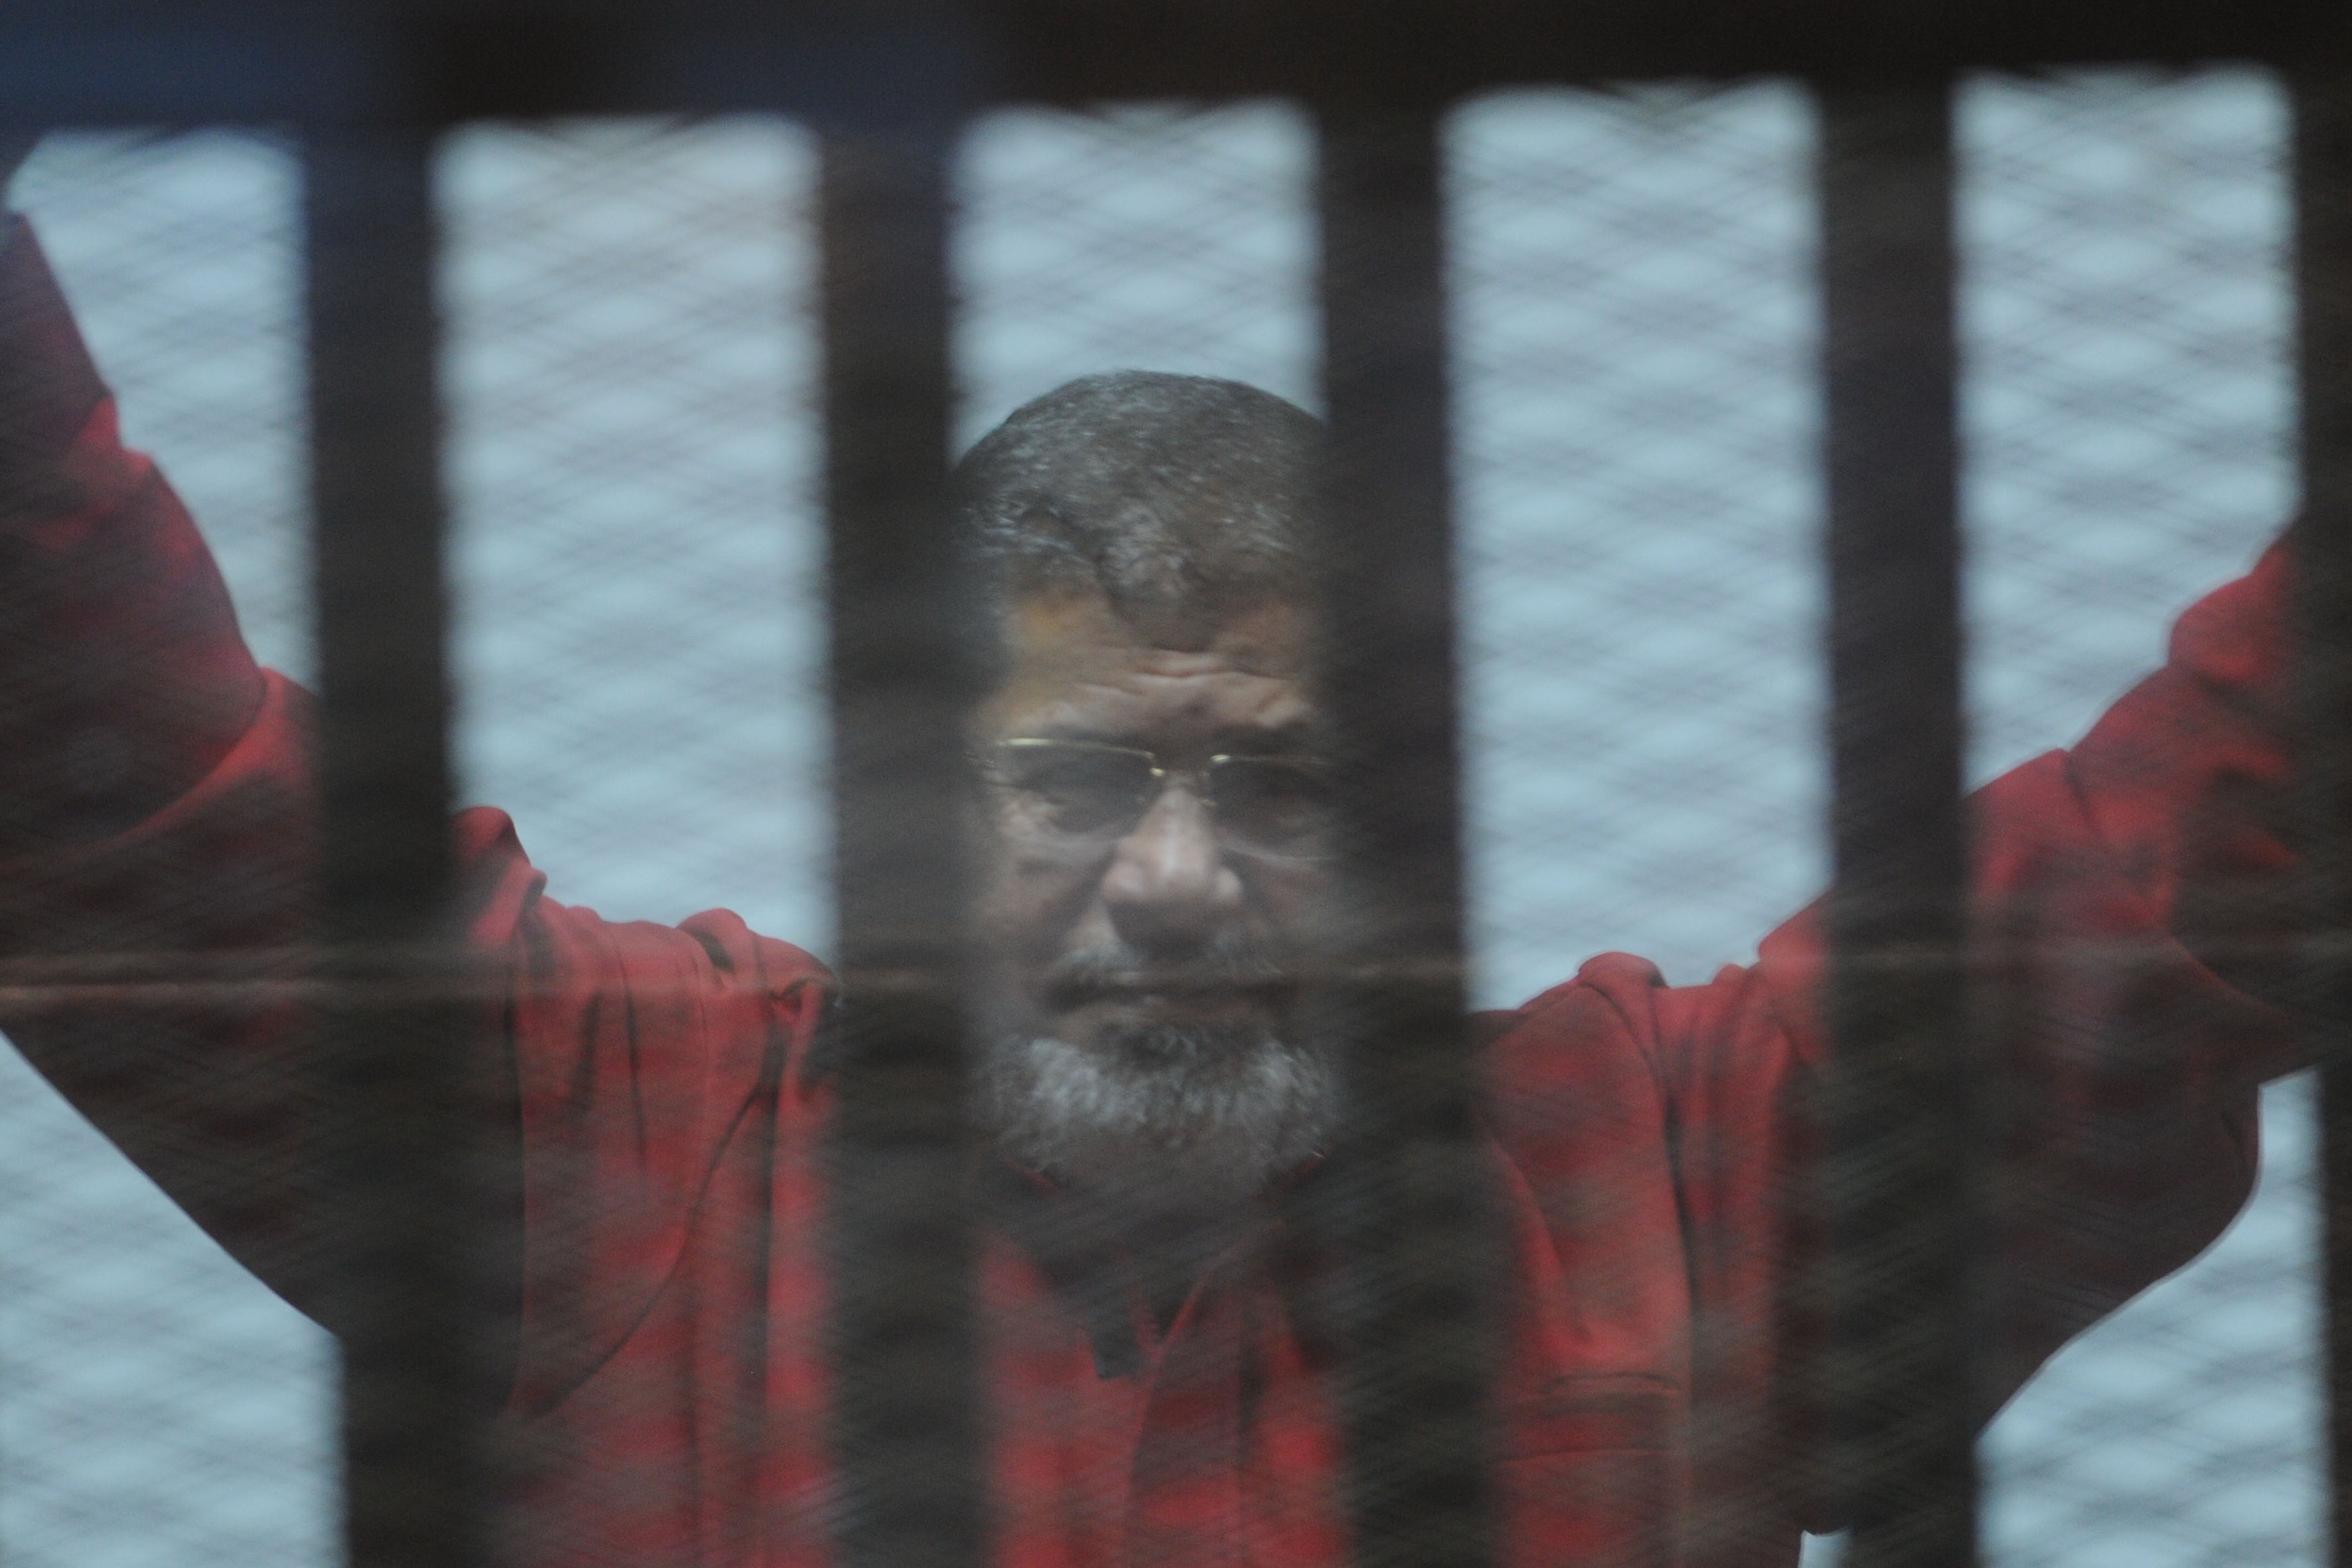 Court reveals details behind Morsi’s death sentence verdict